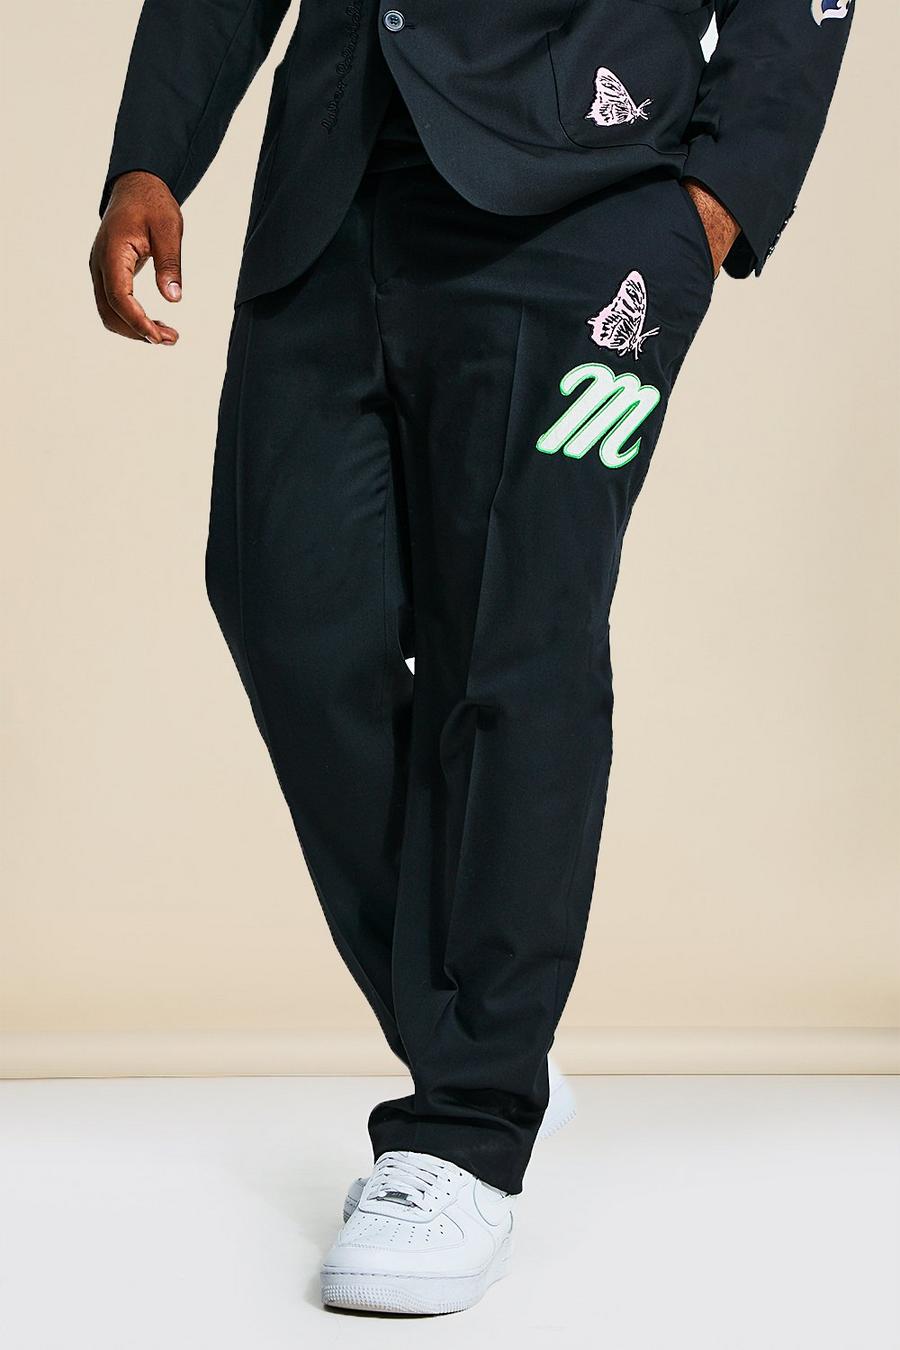 Grande taille - Pantalon de costume cintré style universitaire, Black noir